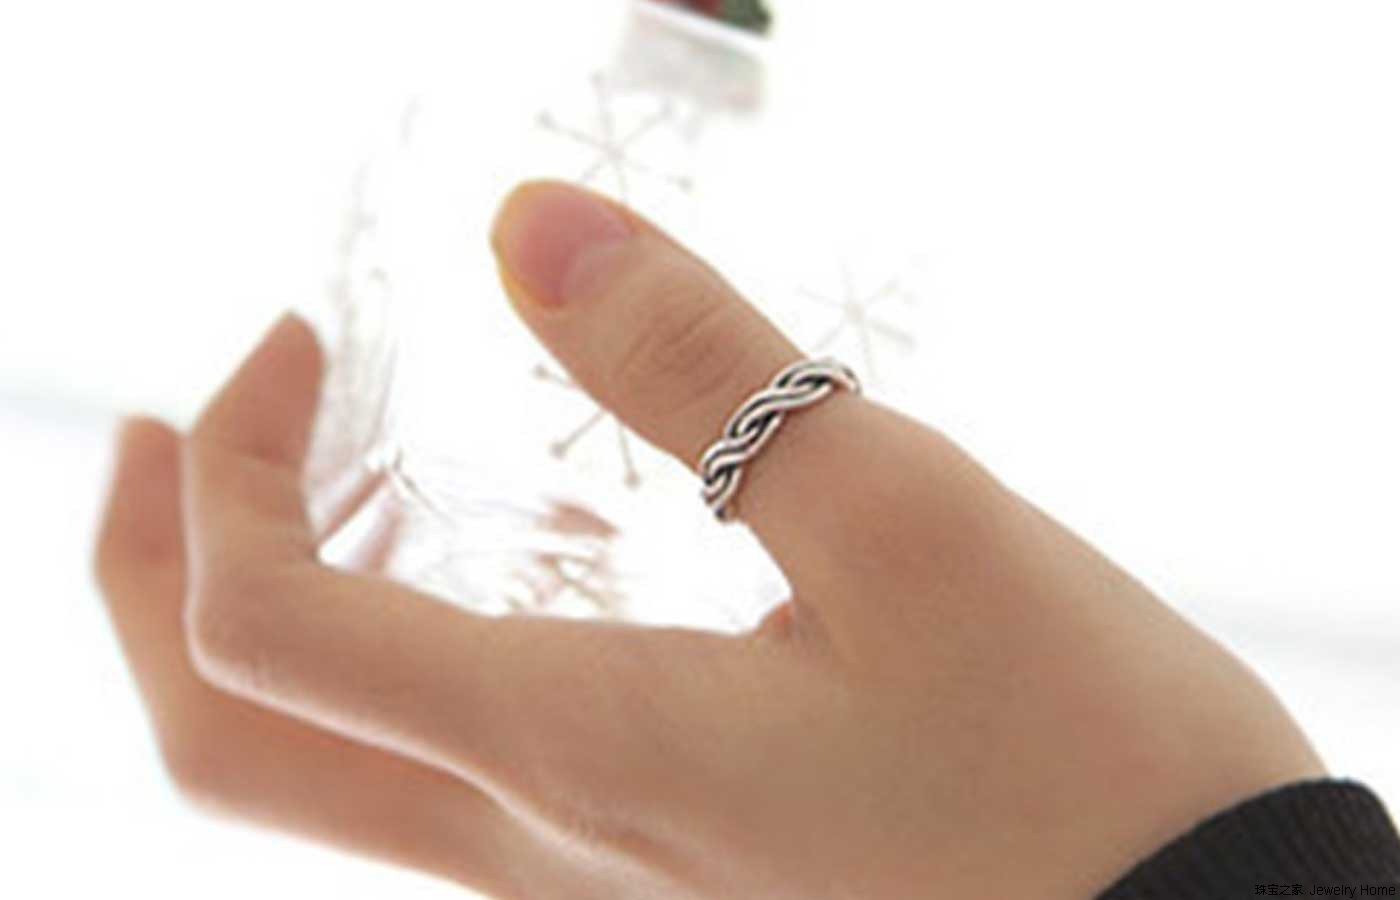 单身戒指的戴法及含义|腕表之家xbiao.com